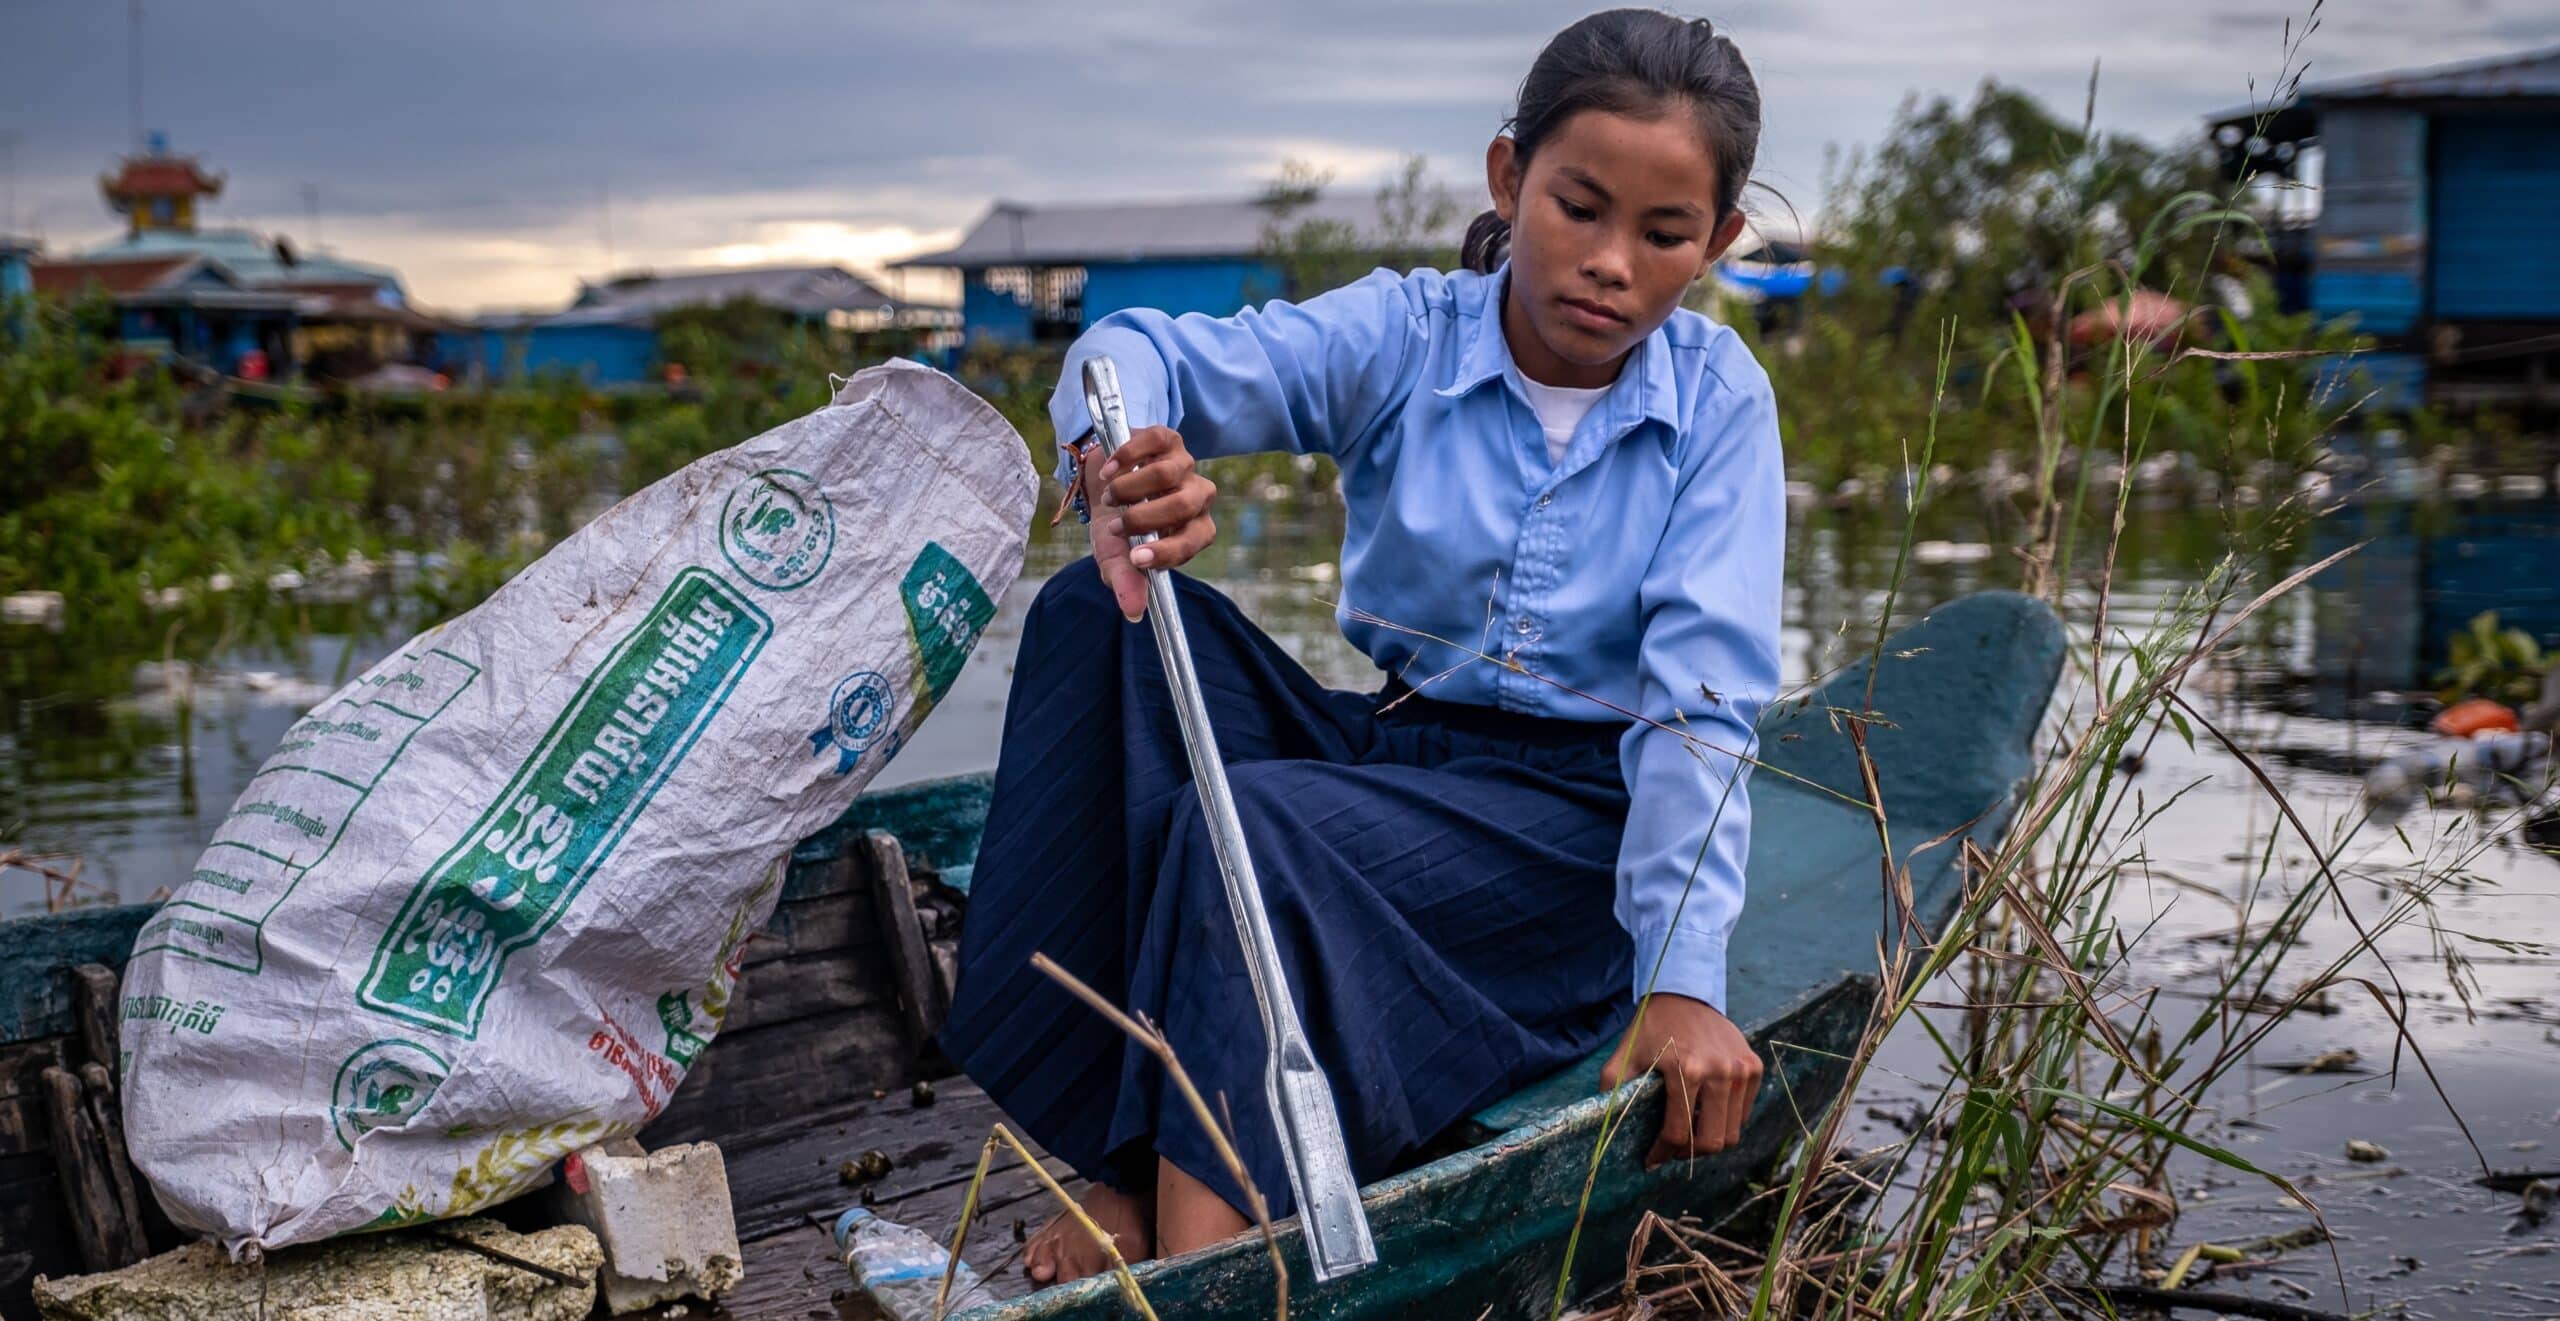 En jente sitter i en trebåt og plukker søppel opp av vannet med en tang